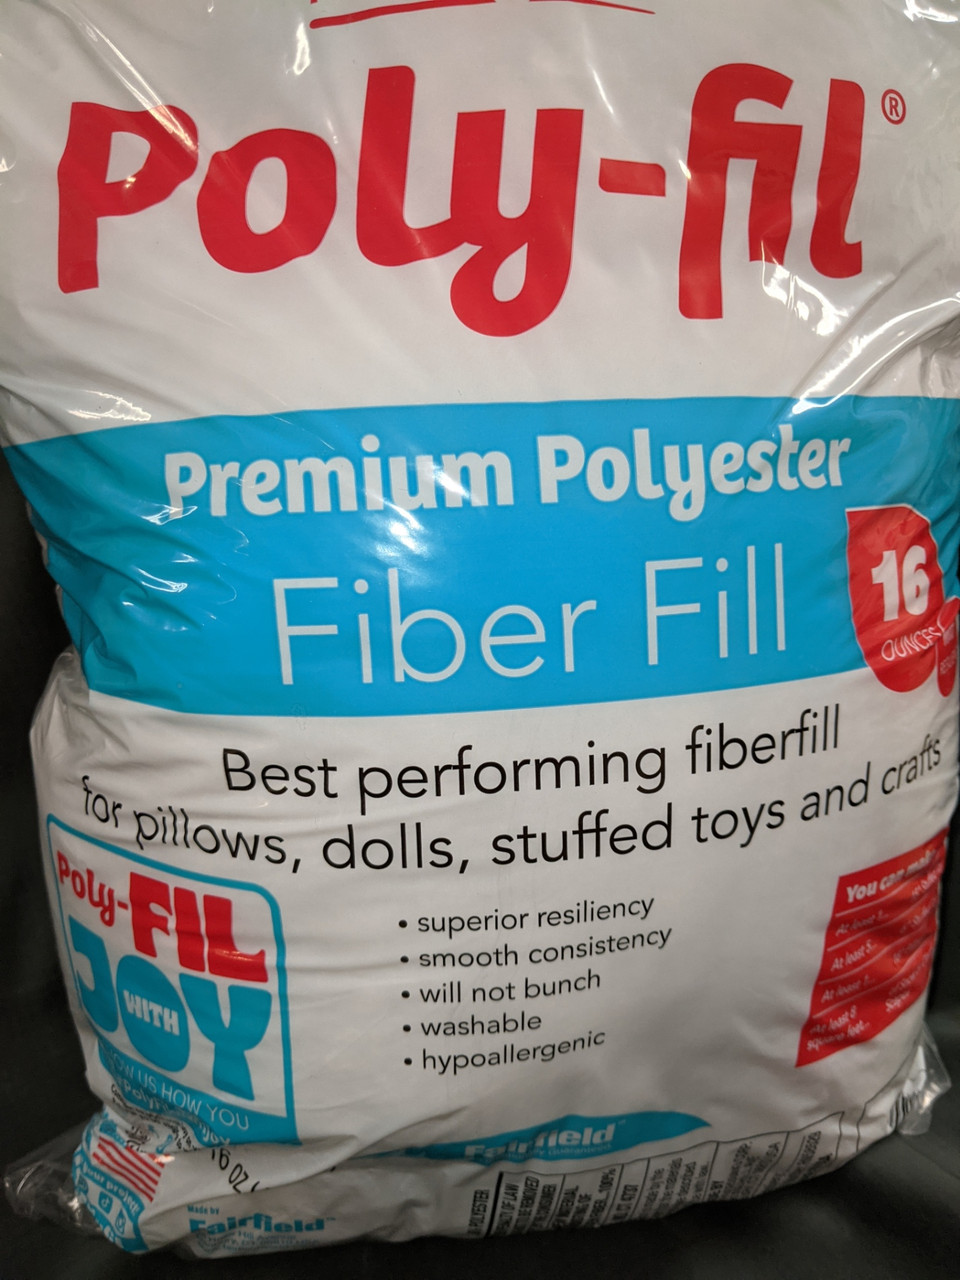 Poly-fil Bag 16 oz - Gaffney Fabrics